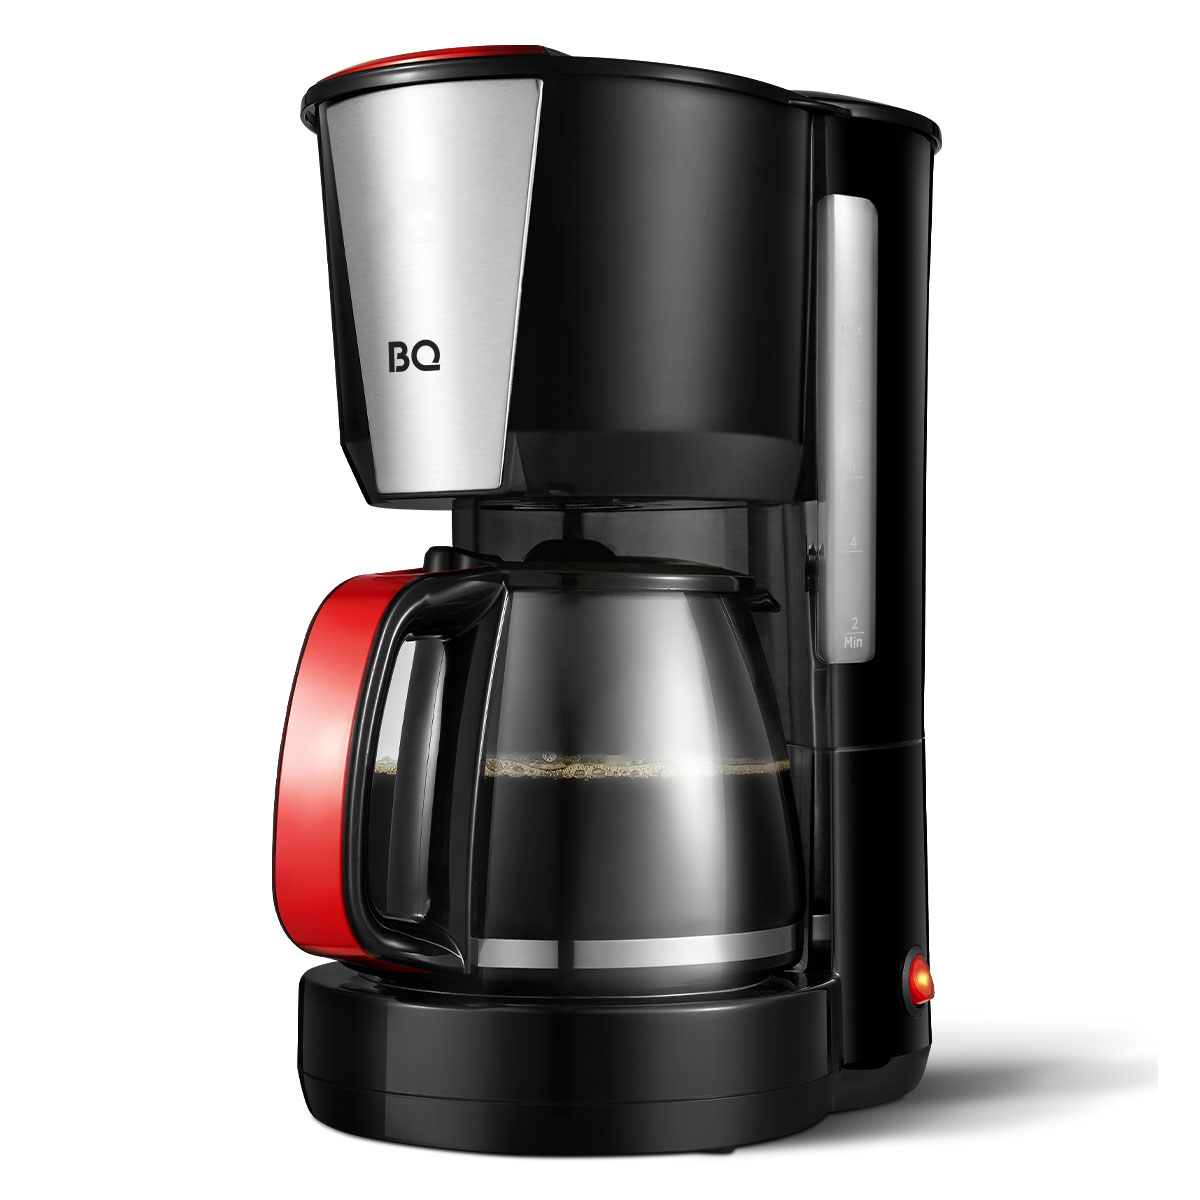 Кофеварка капельного типа BQ CM1008 красный, черный кофеварка kelli kl 1394 красный